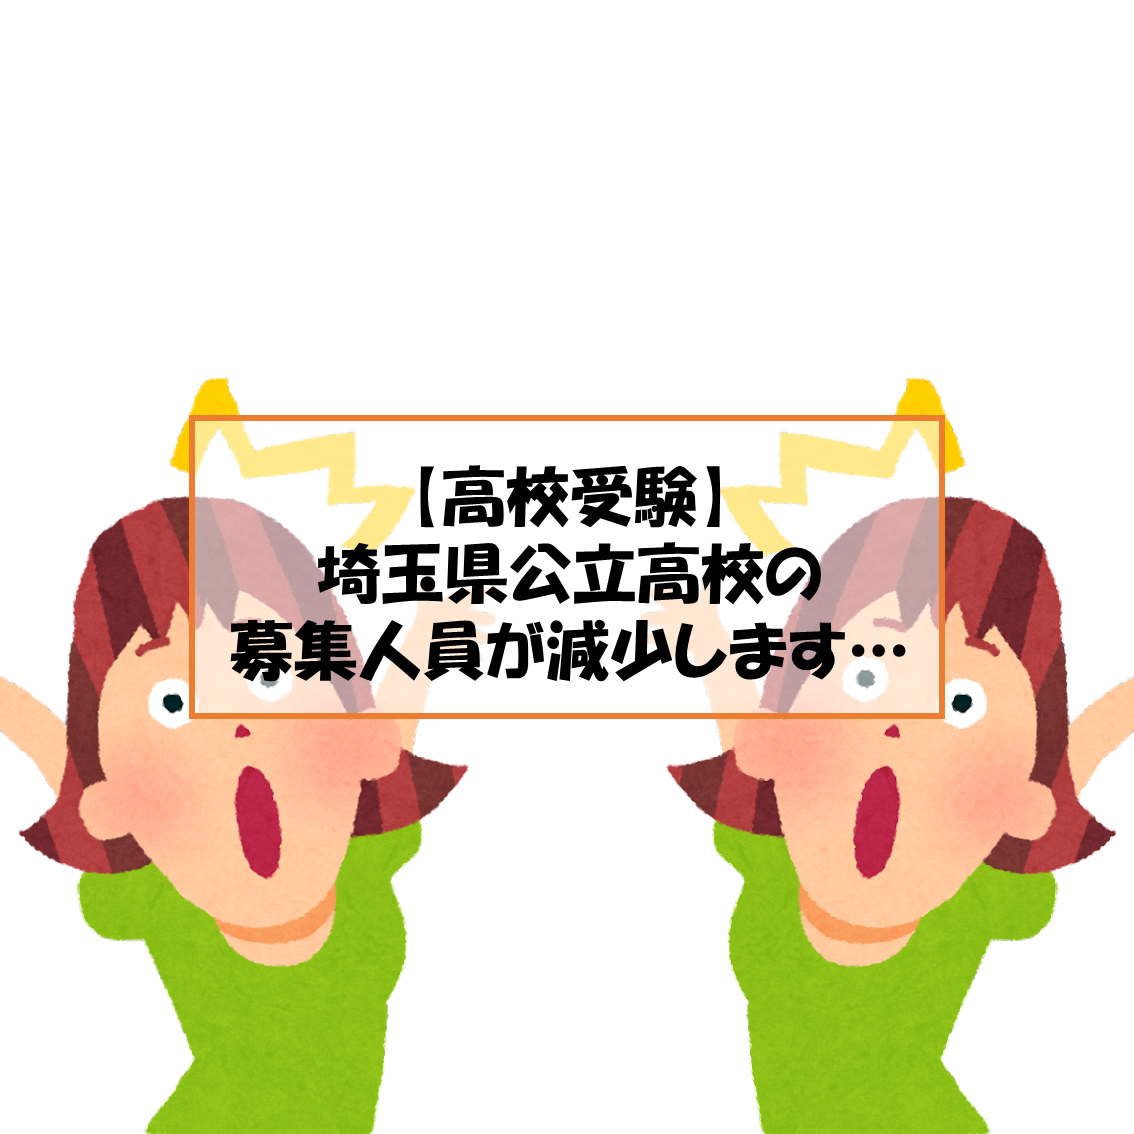 埼玉県公立高校(全日制)の募集人員が減少します…